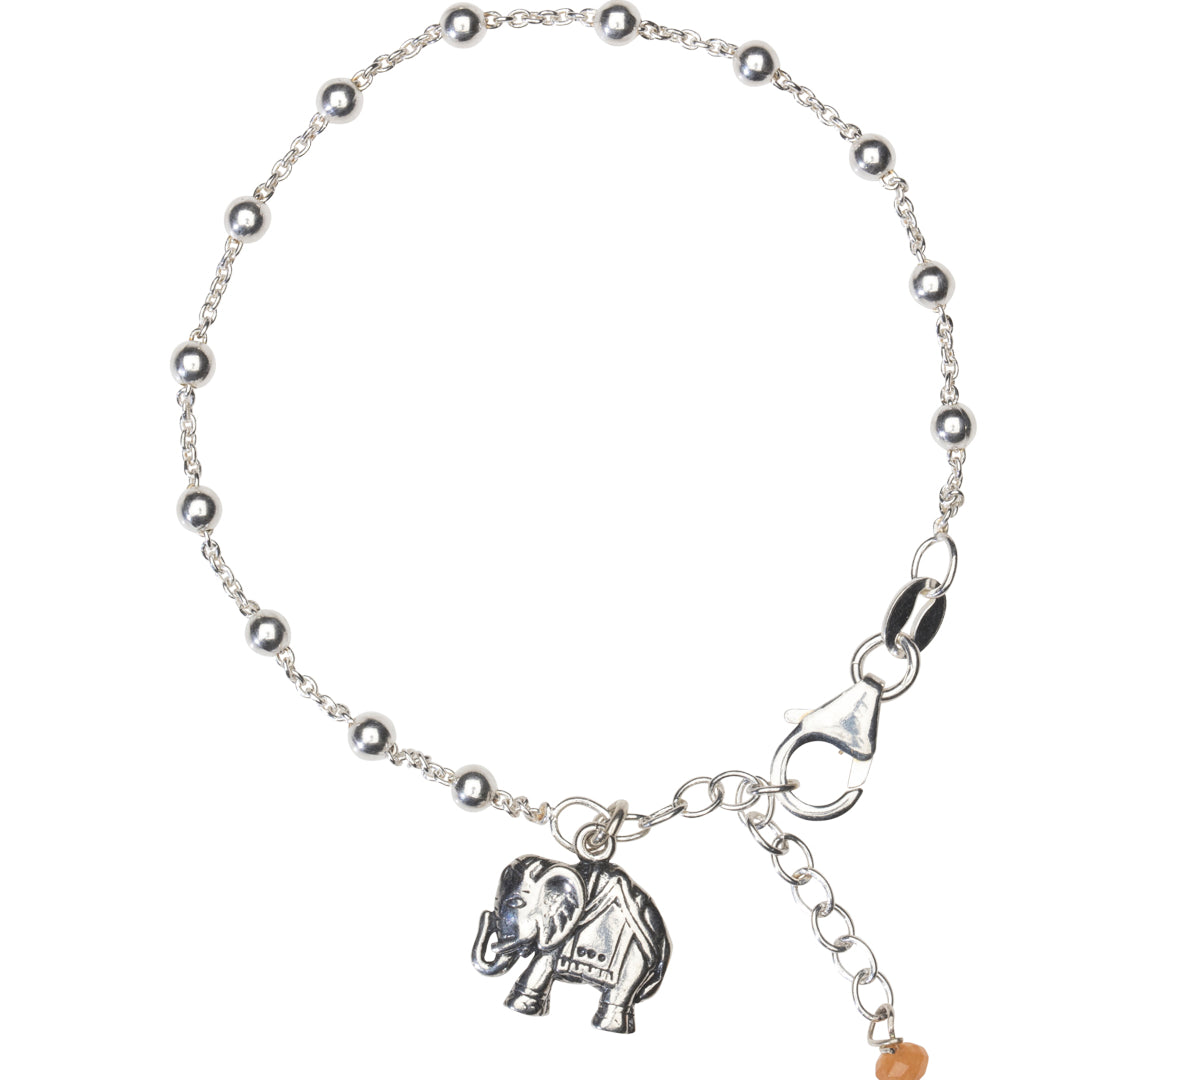 Elefant Armband mit Elefant Anhänger für Kraft und Glück in 925 Silber. Feine Kugelkette.